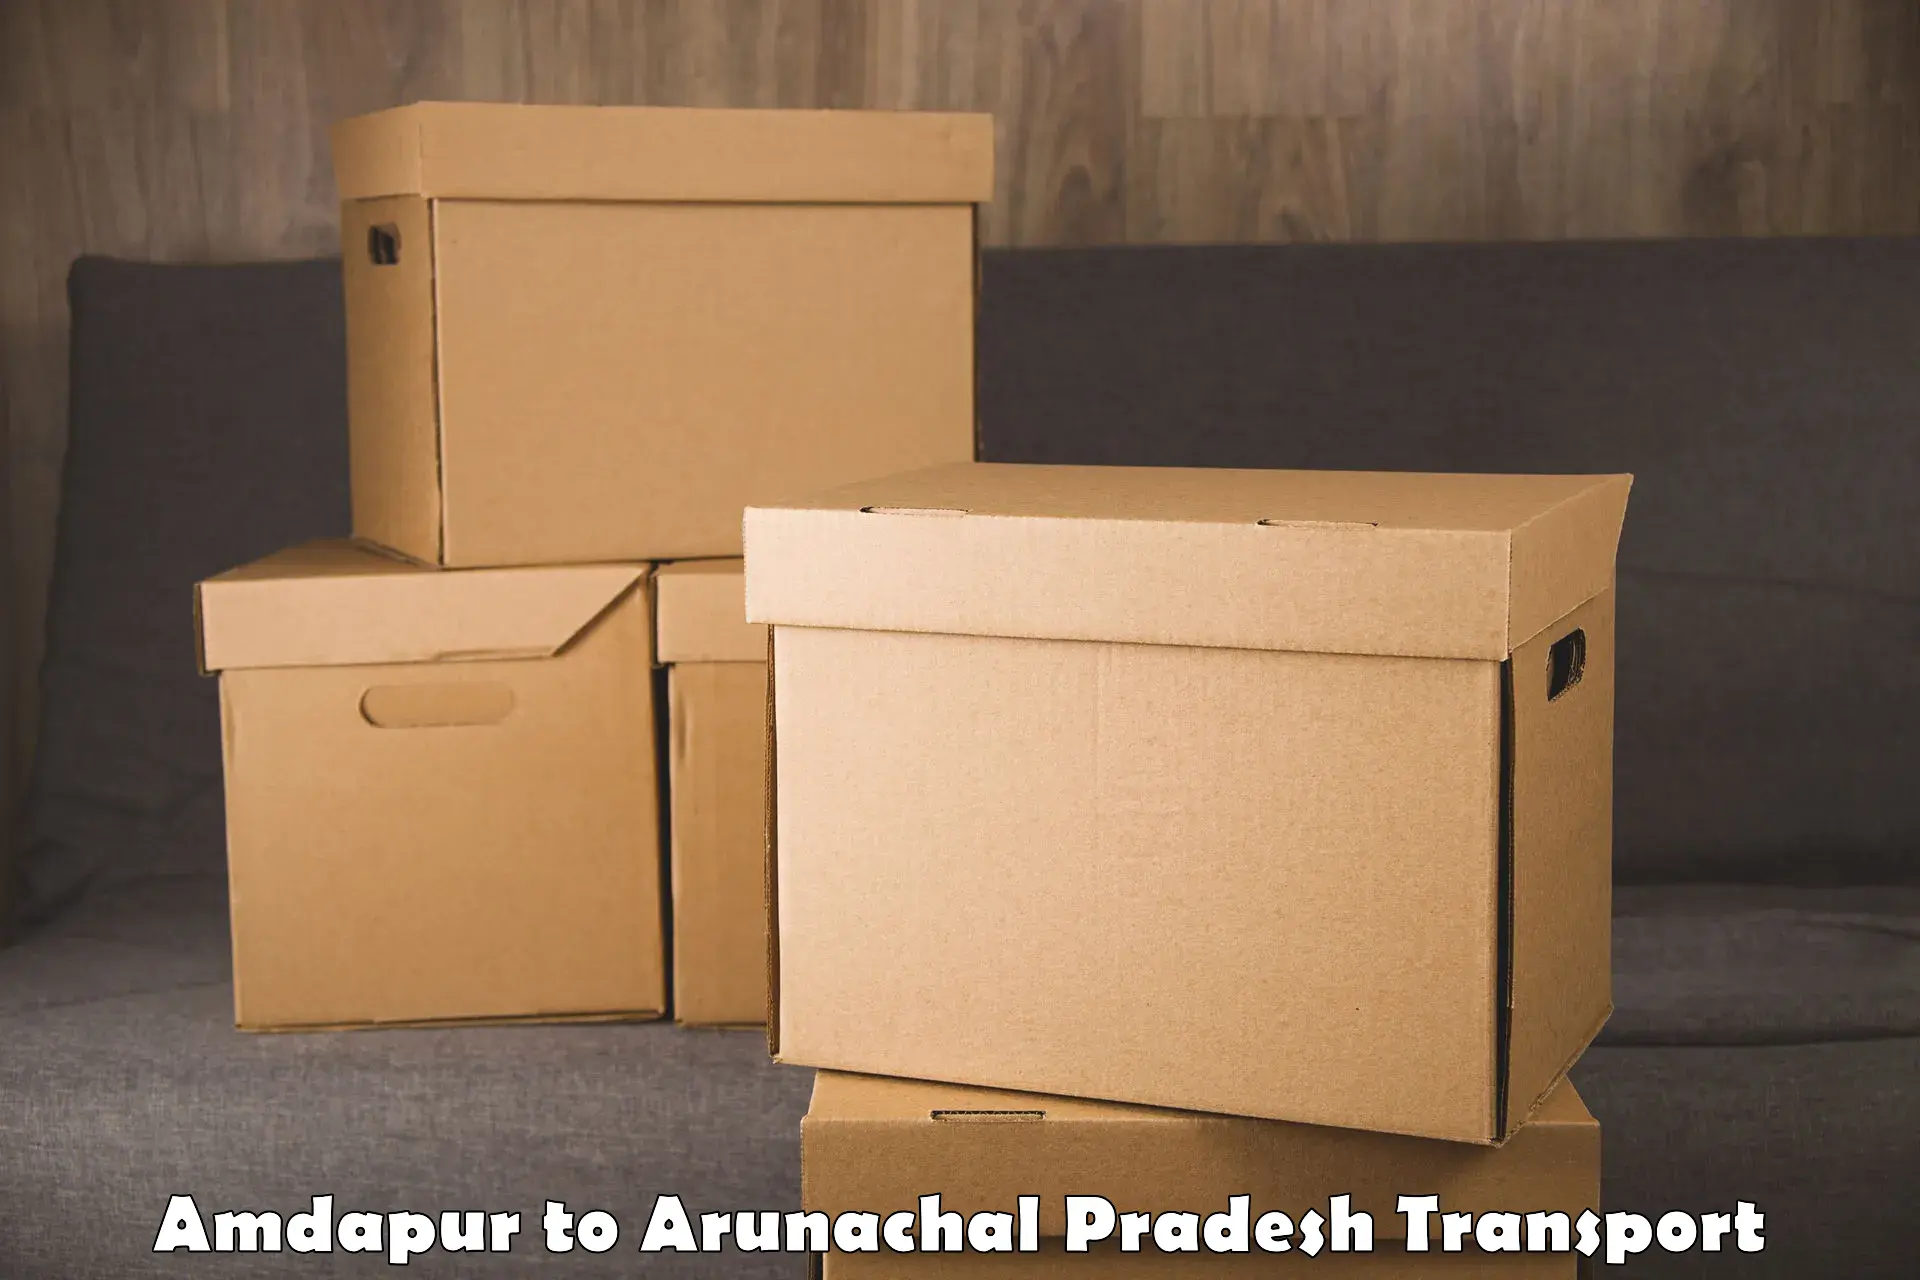 Parcel transport services Amdapur to Arunachal Pradesh